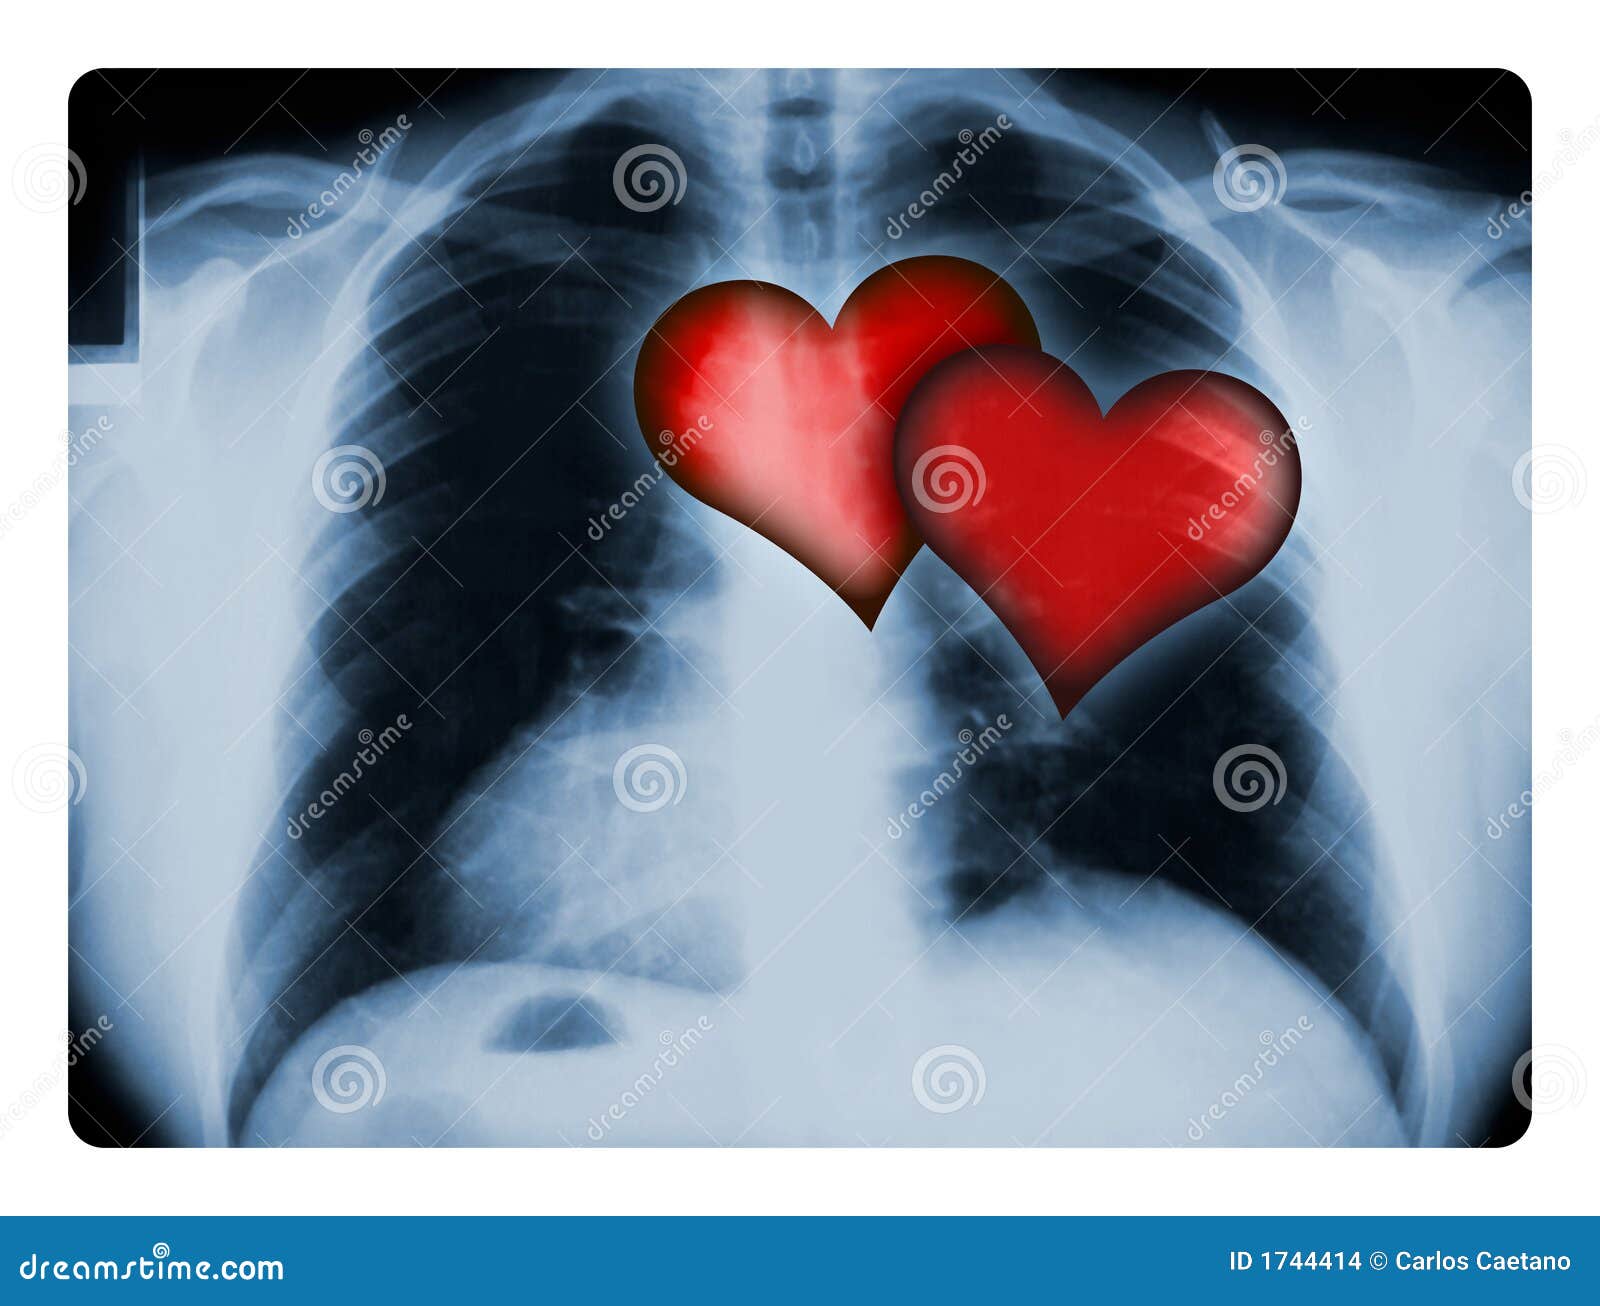 Image result for 2 corazones en el pecho